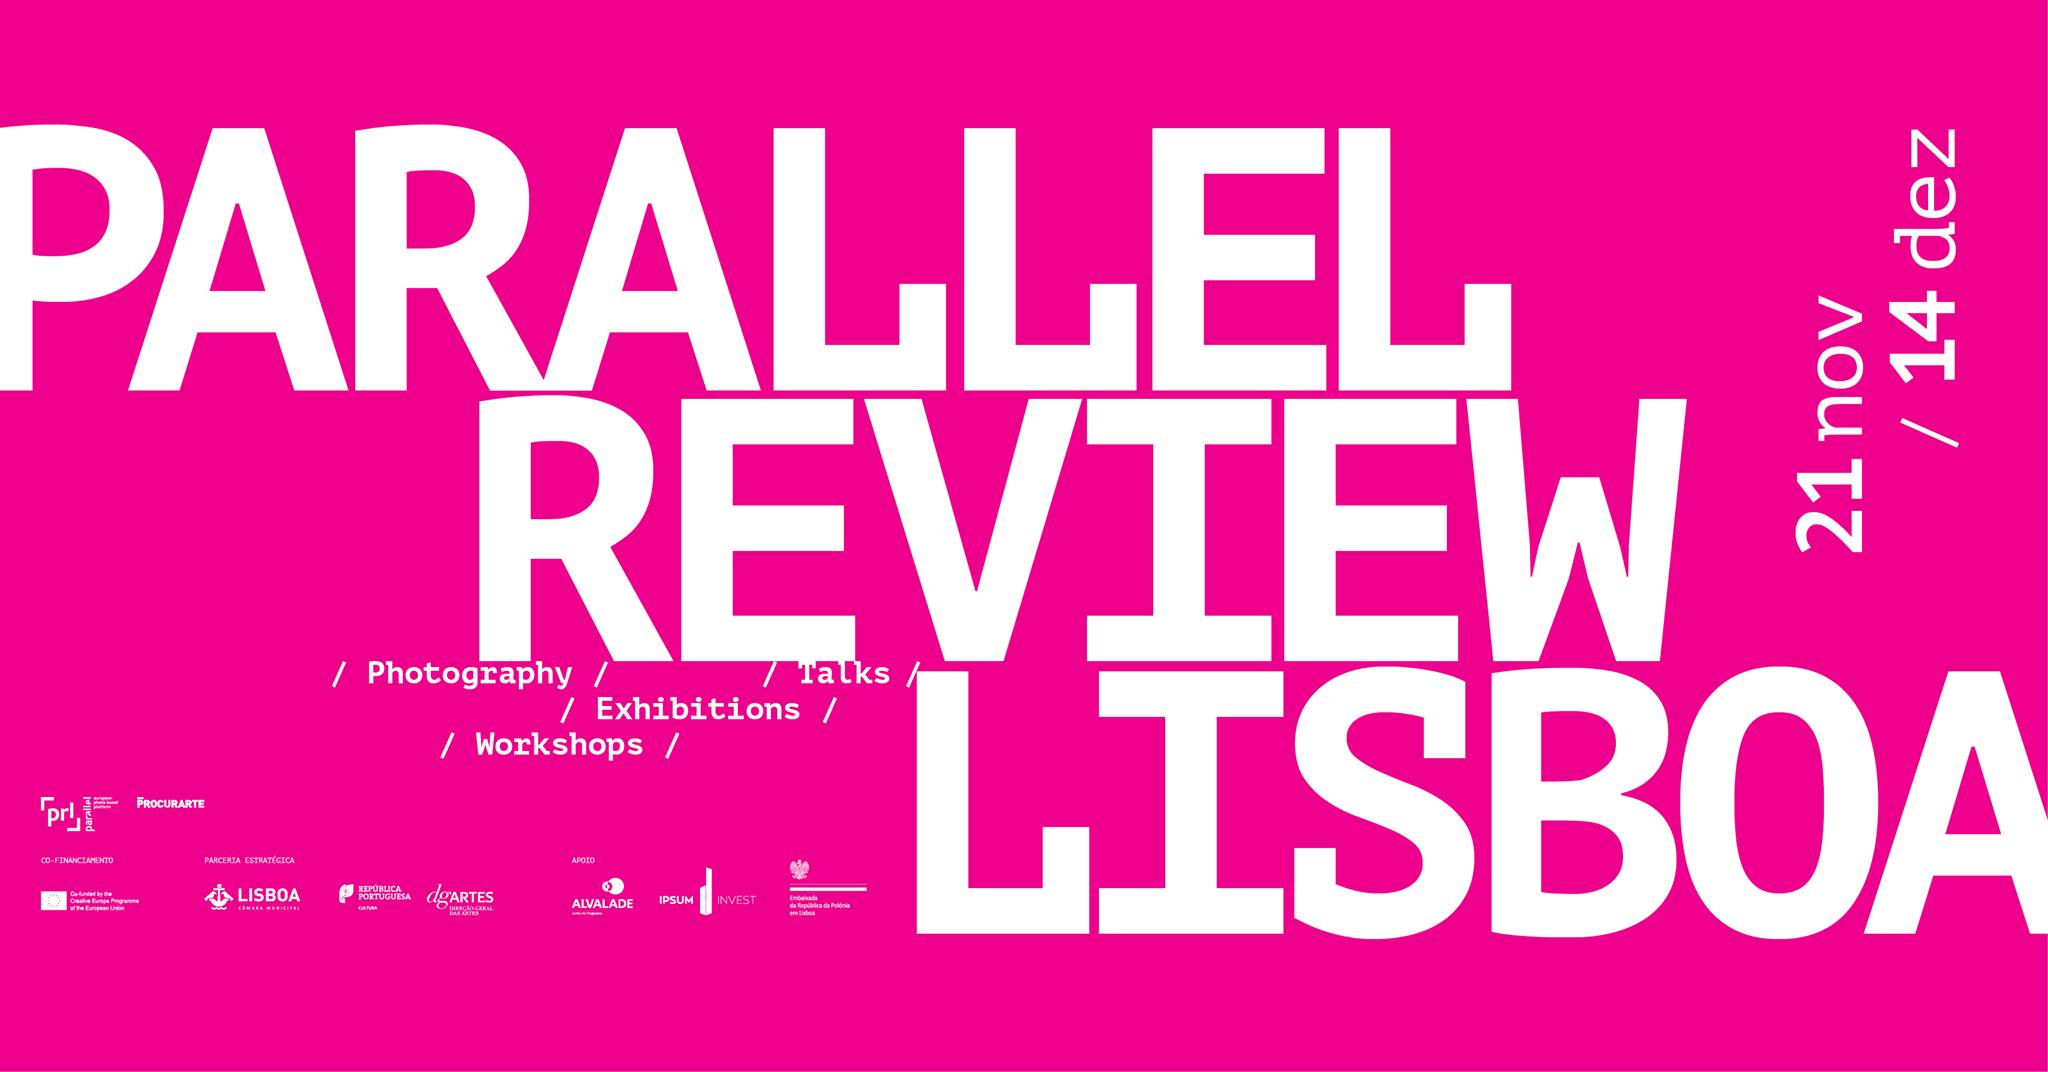 PARALLEL Review Lisboa, 21 de Novembro a 14 de Dezembro